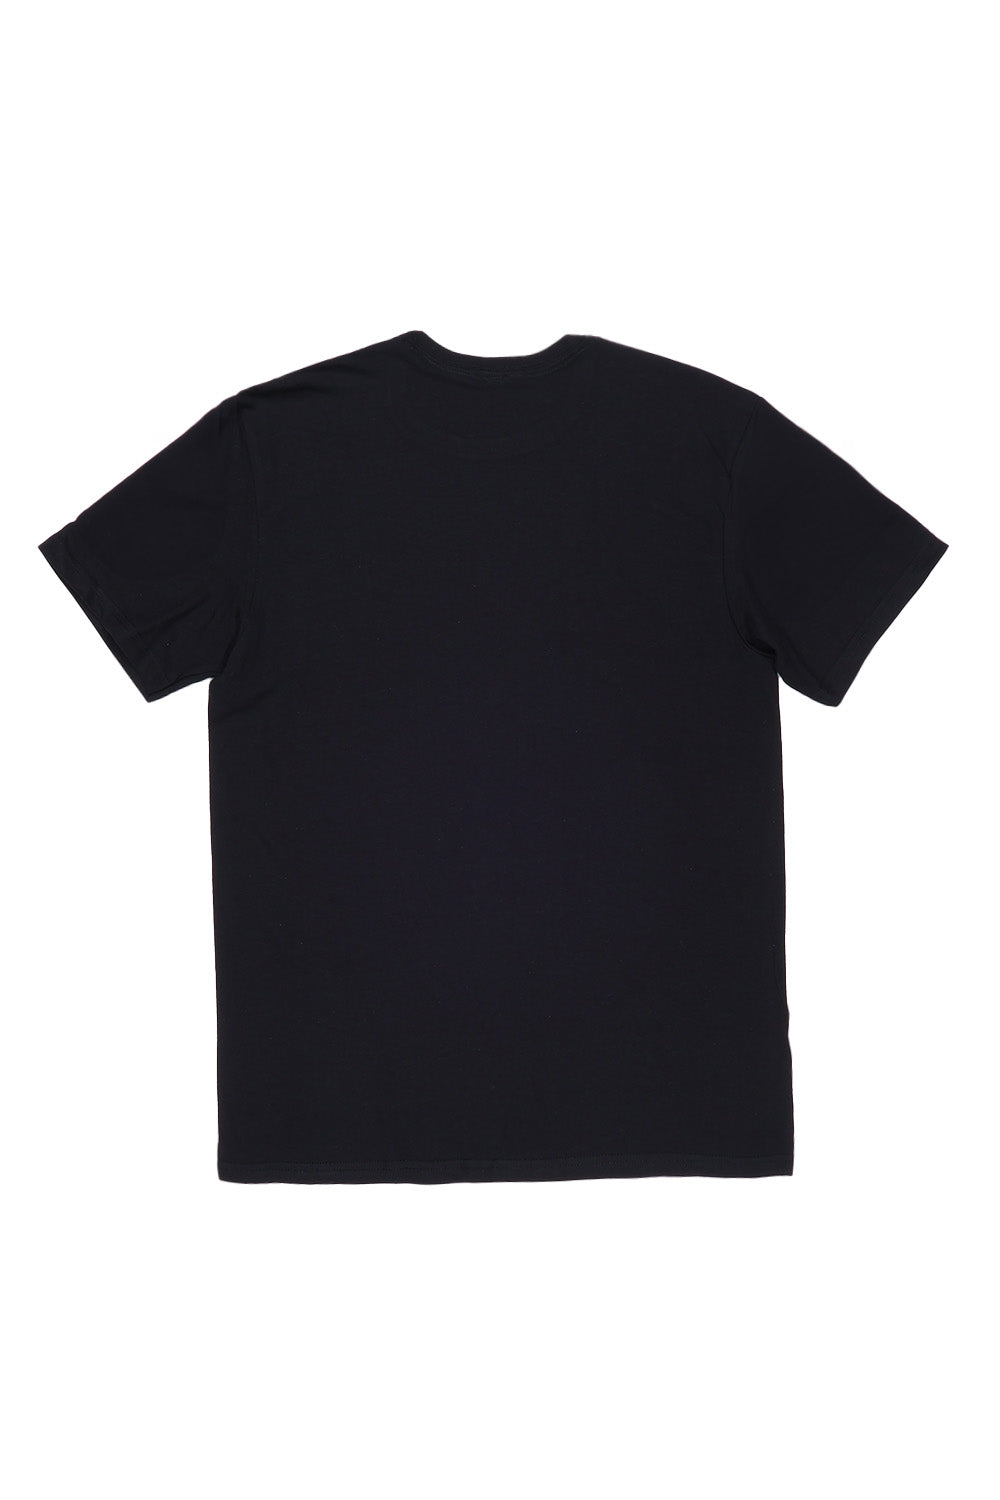 Yeehaw Wild West T-Shirt in Black(Custom Packs)